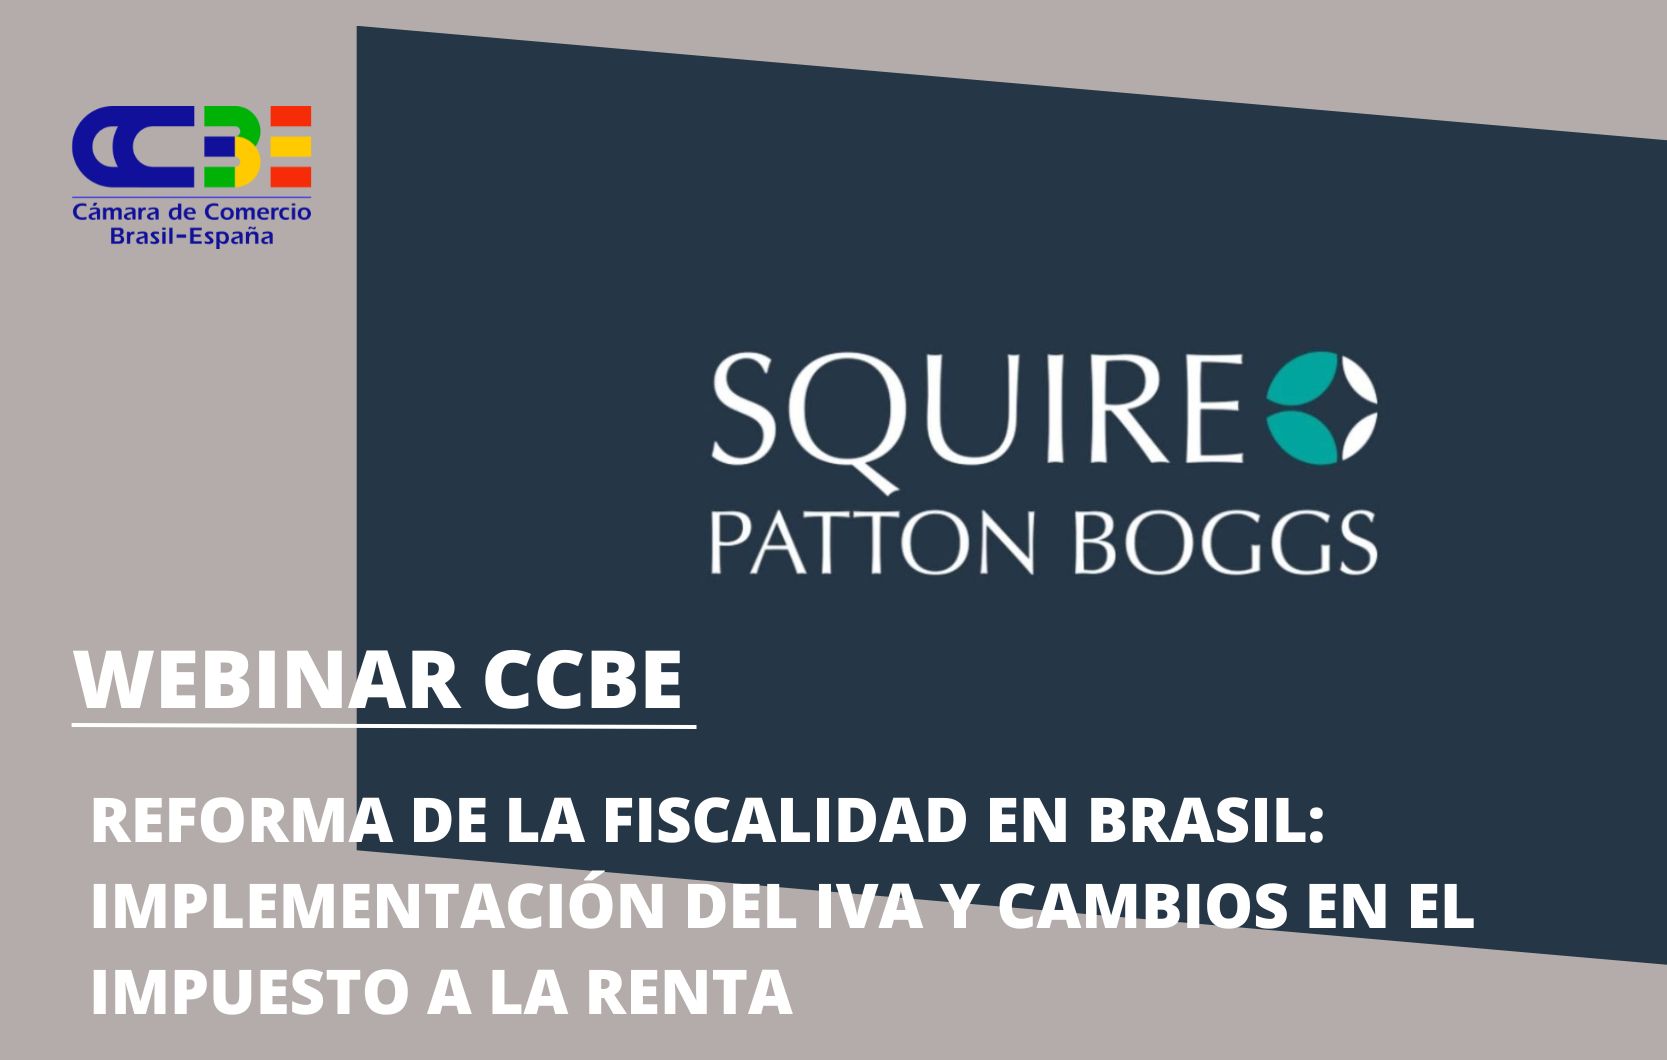 Squire Patton Boggs: Reforma de la fiscalidad en Brasil: implementación del IVA y cambios en el impuesto a la renta